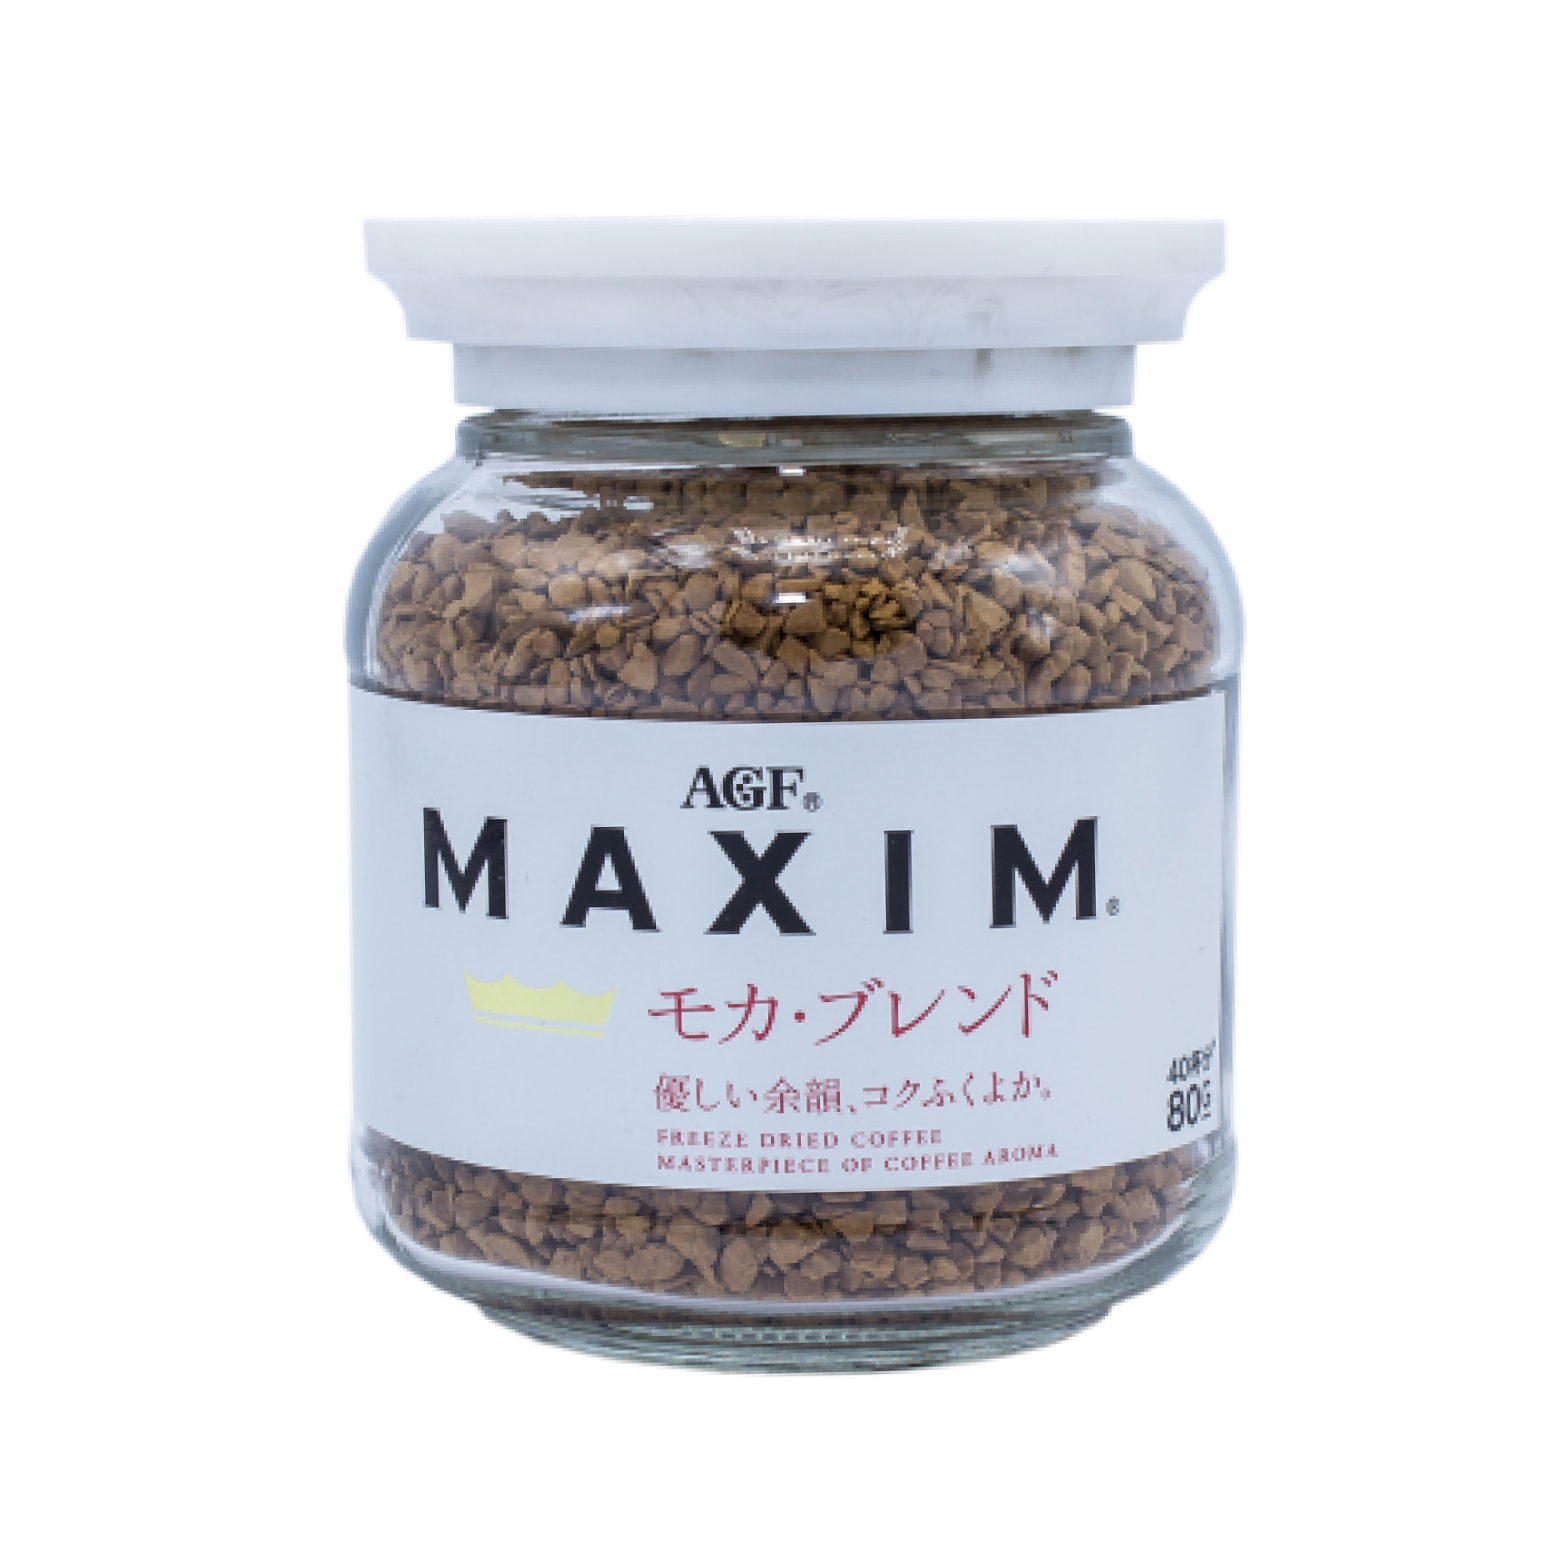 กาแฟ Maxim สูตร Mocha (กระปุกสีขาว) - AGF